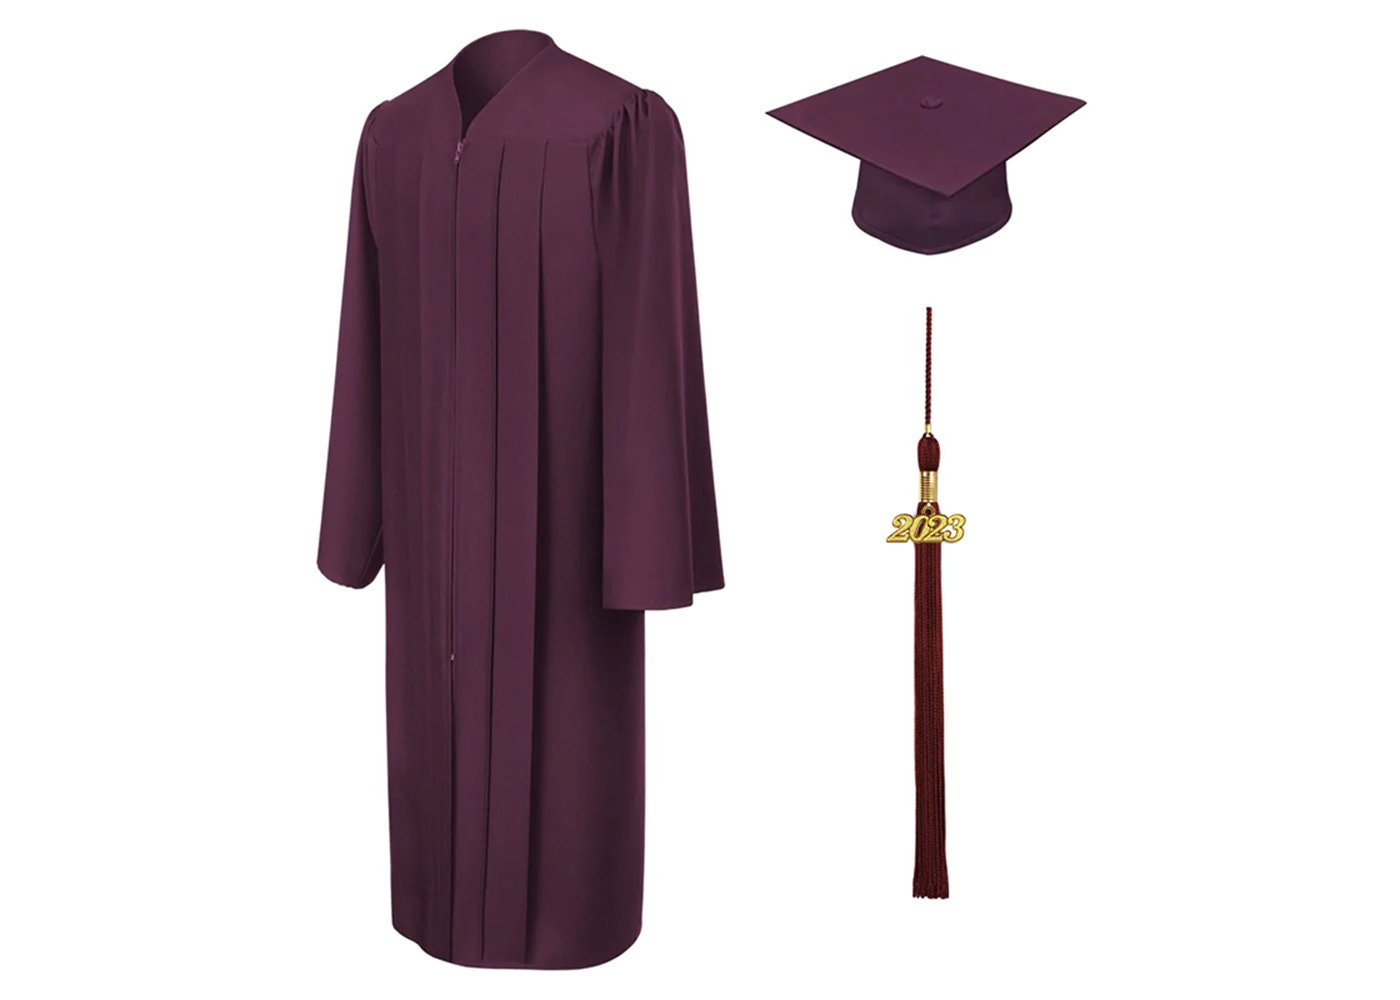 Graduation / Cap & Gown Information